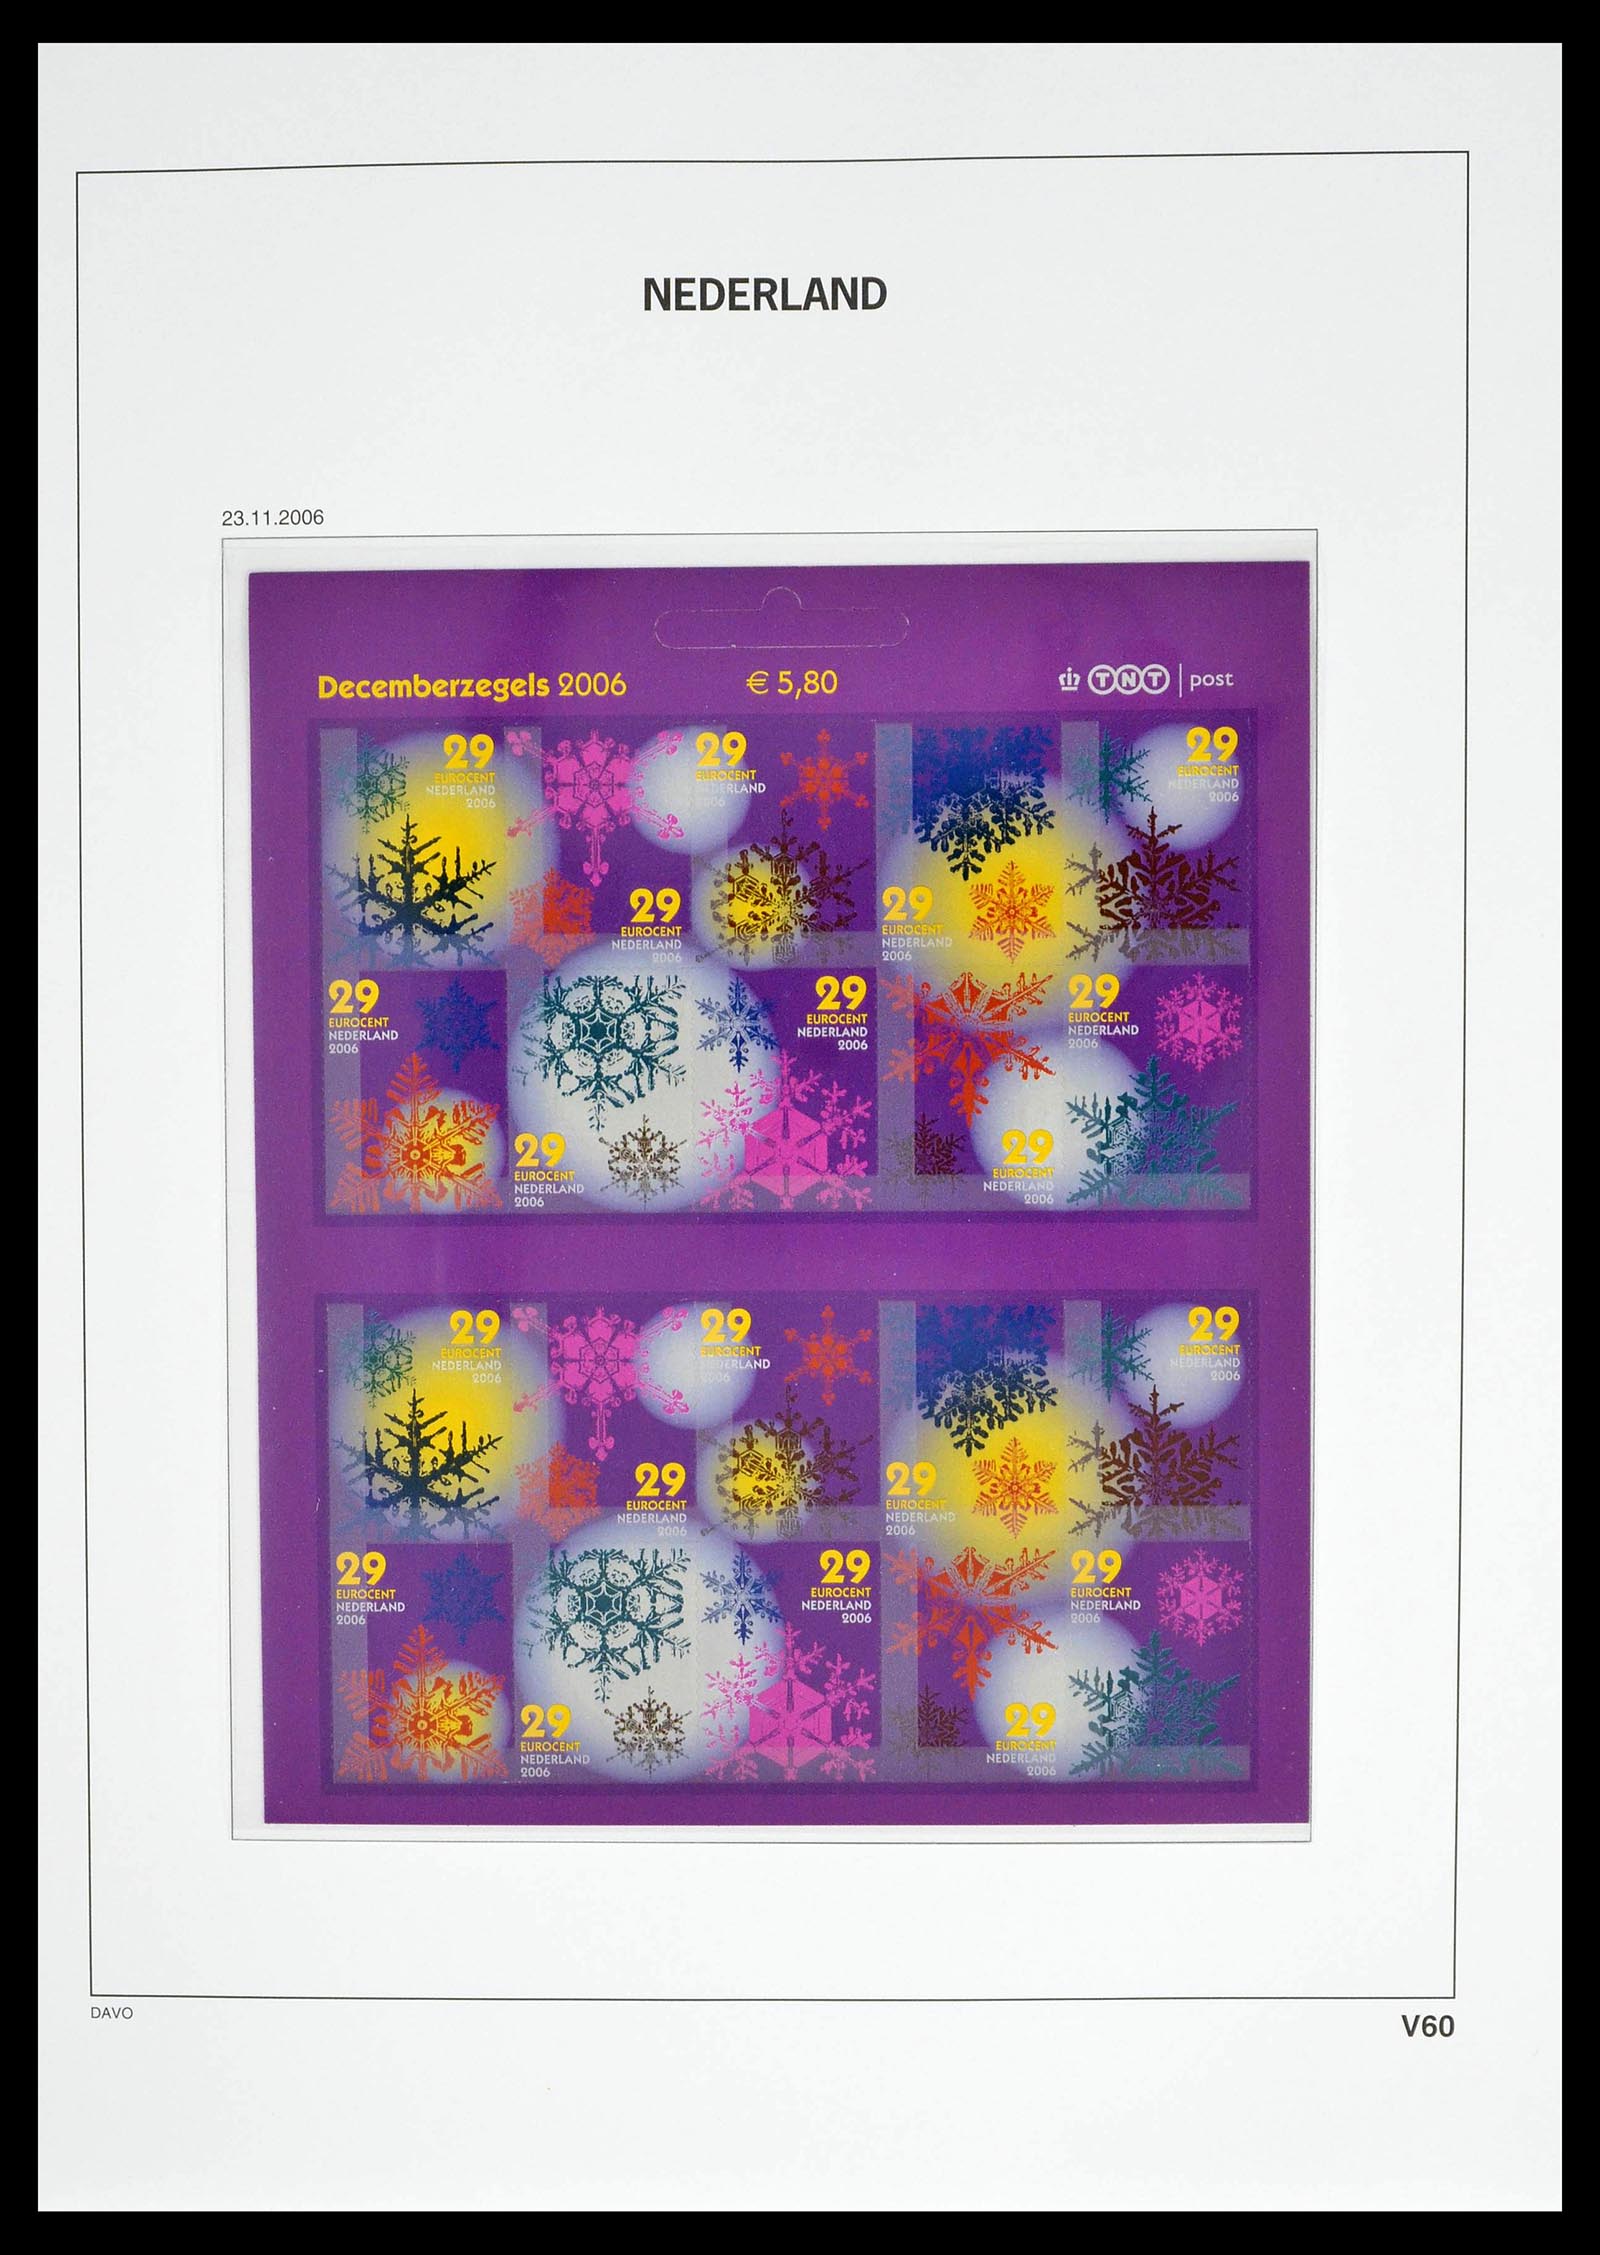 39134 0074 - Stamp collection 39134 Netherlands sheetlets 1992-2019!